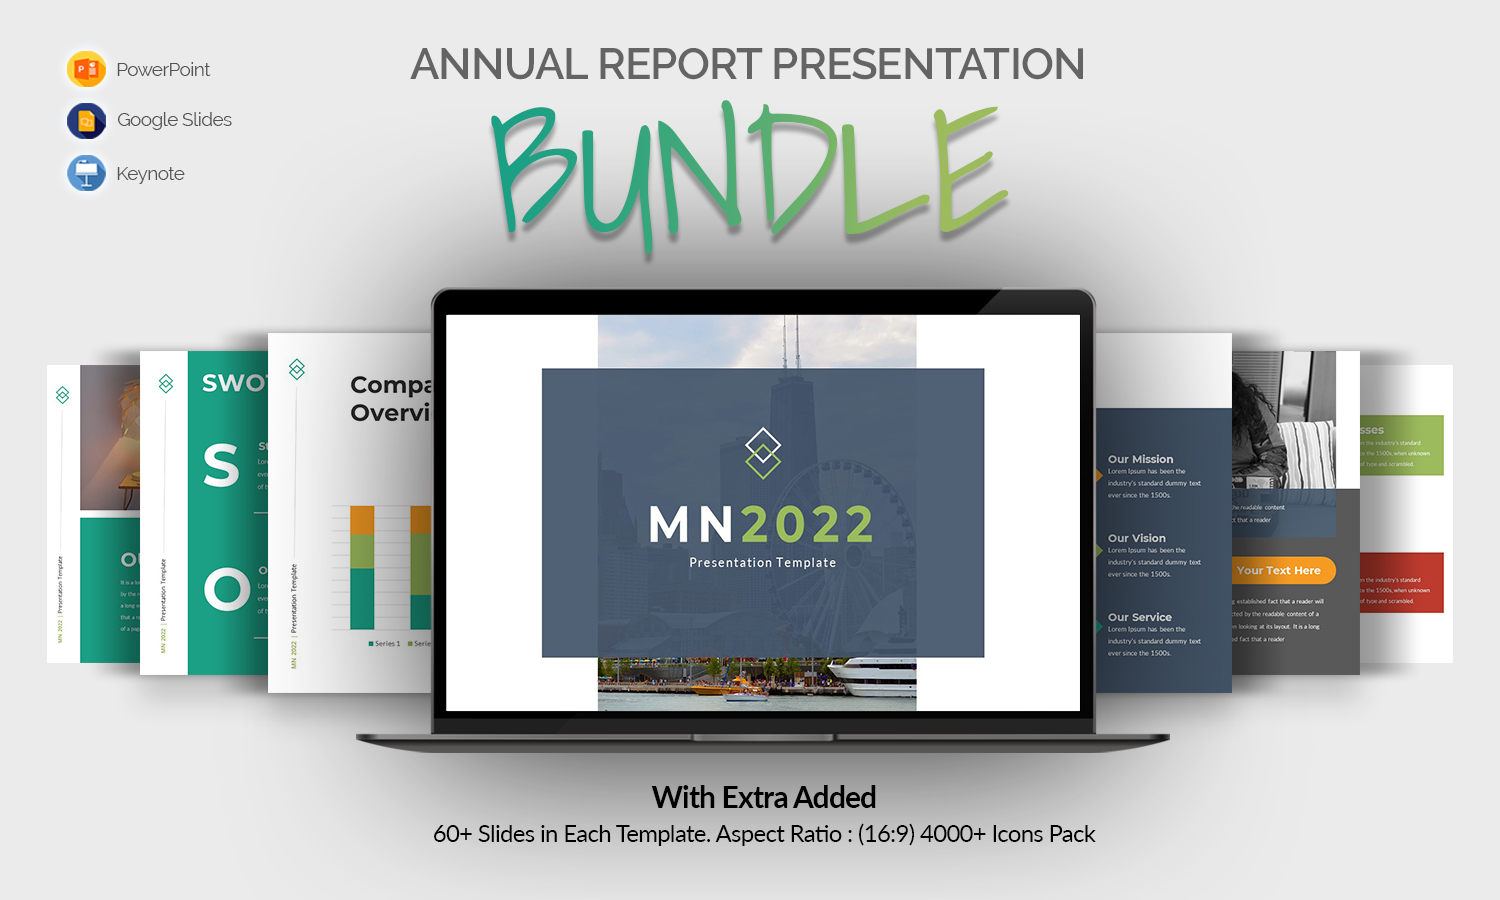 MN Corporate Presentation Bundle